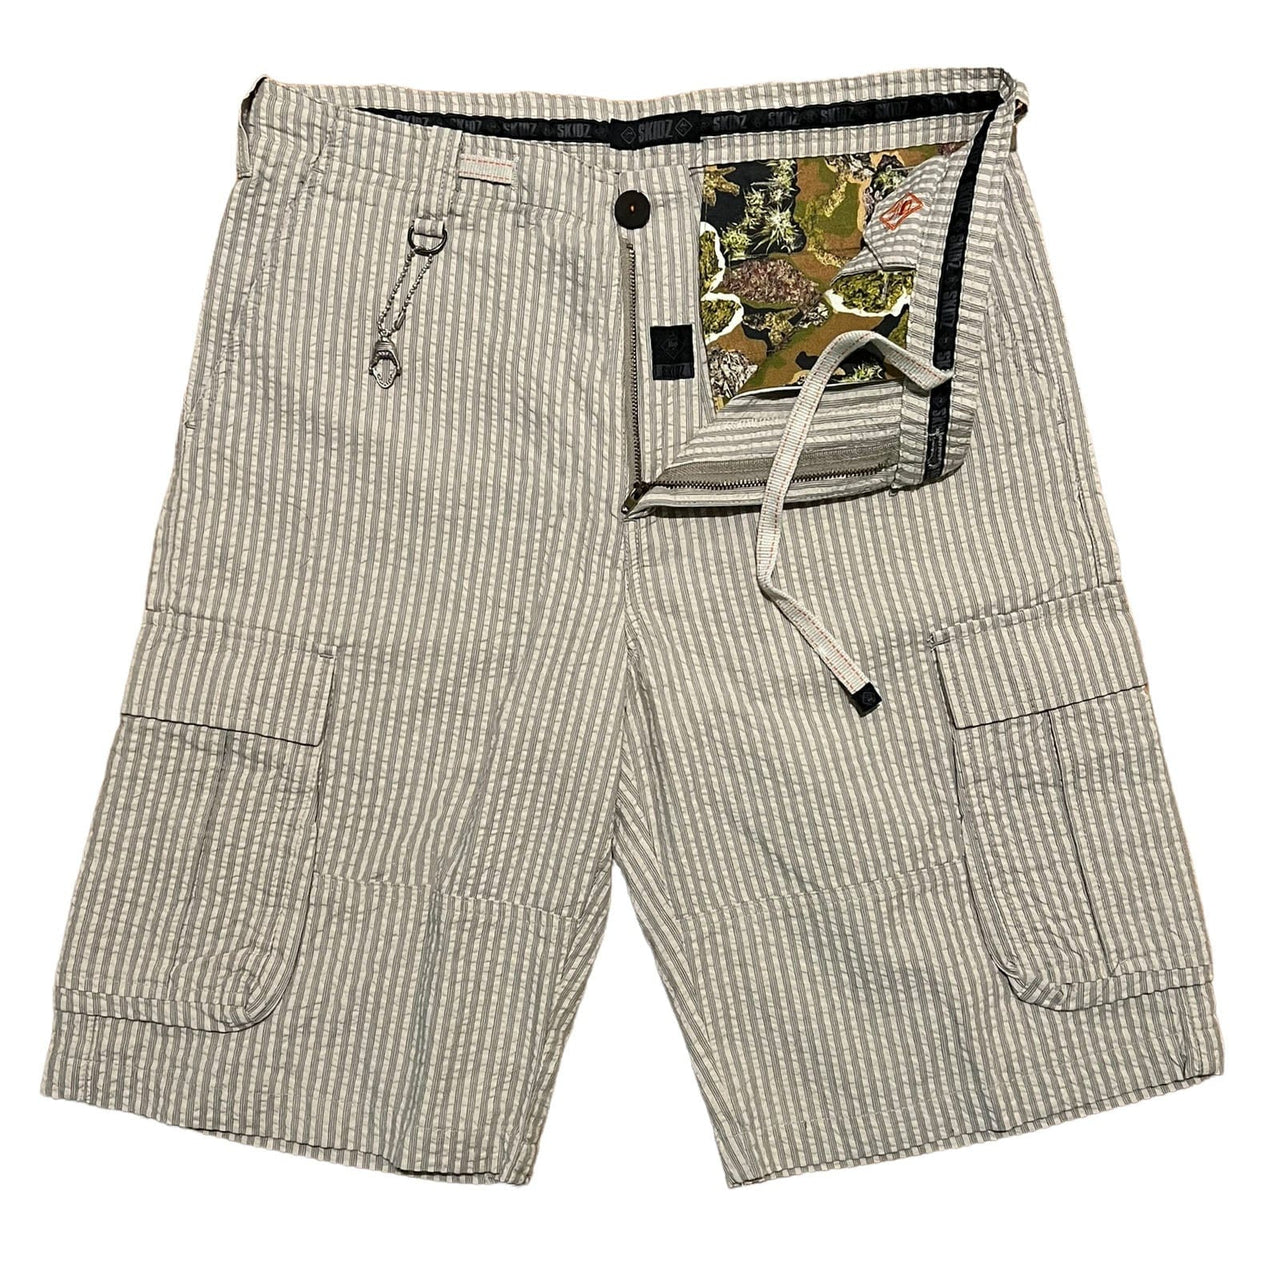 SKIDZ Shorts Seersucker Cargo Shorts - Natural Striped